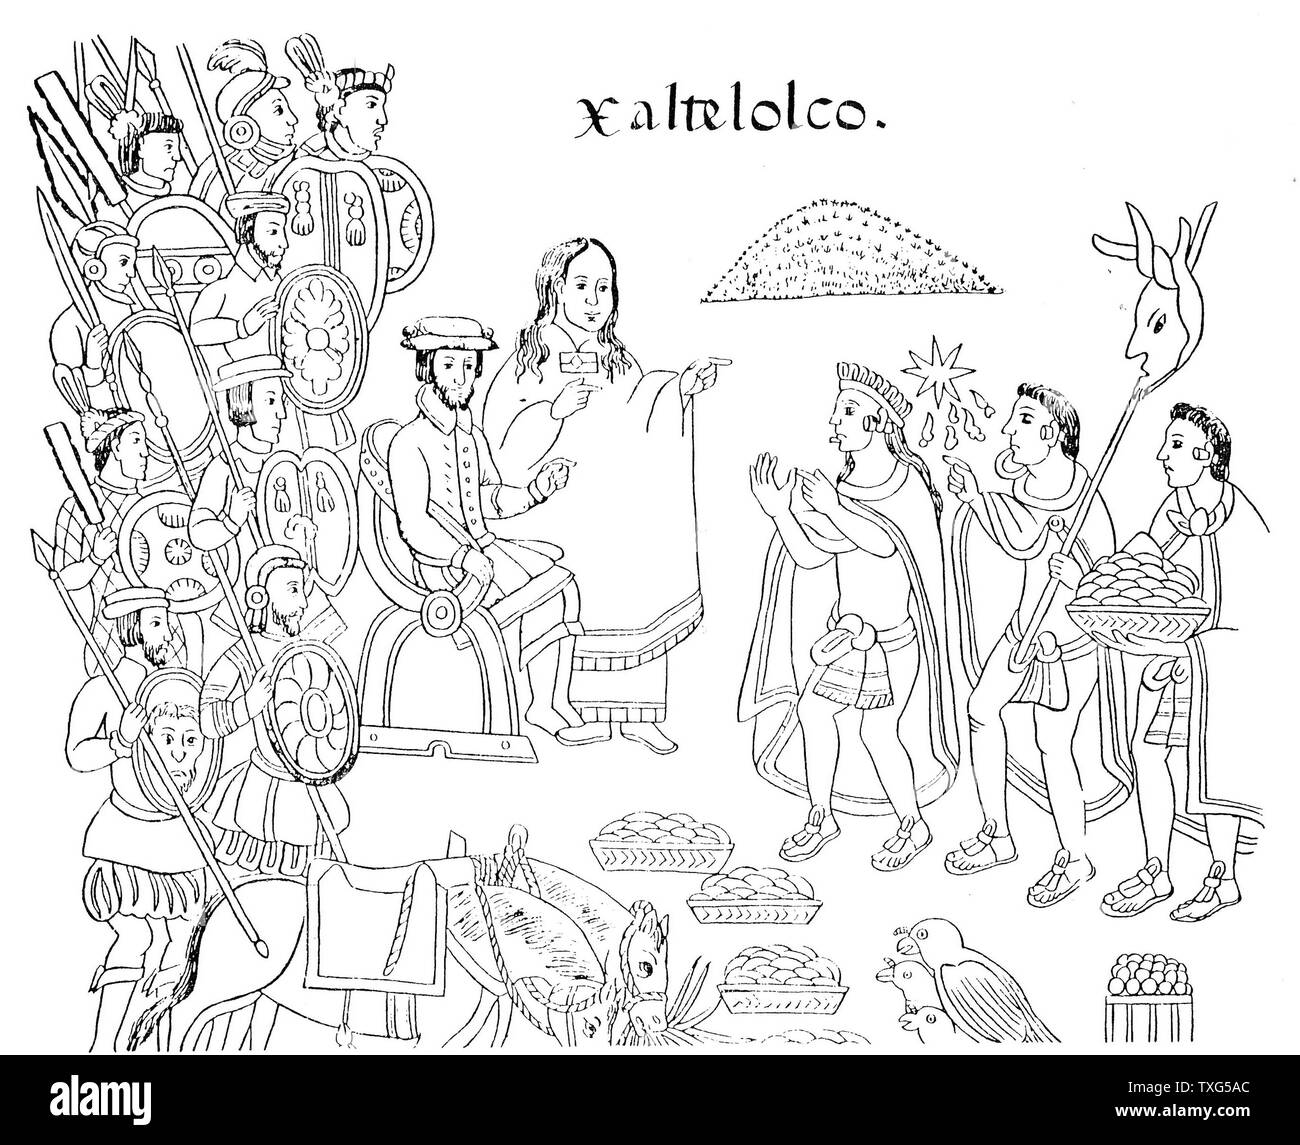 Hernandez Cortes oder Cortez, spanischen Conquistador, Xaltelolco, in Mexiko erobert. Neben ihm ist La Malinche seiner Herrin, der als Dolmetscher fungierte. Gravur nach dem 16. jahrhundert Codex' Geschichte von Tlaxcala' Stockfoto